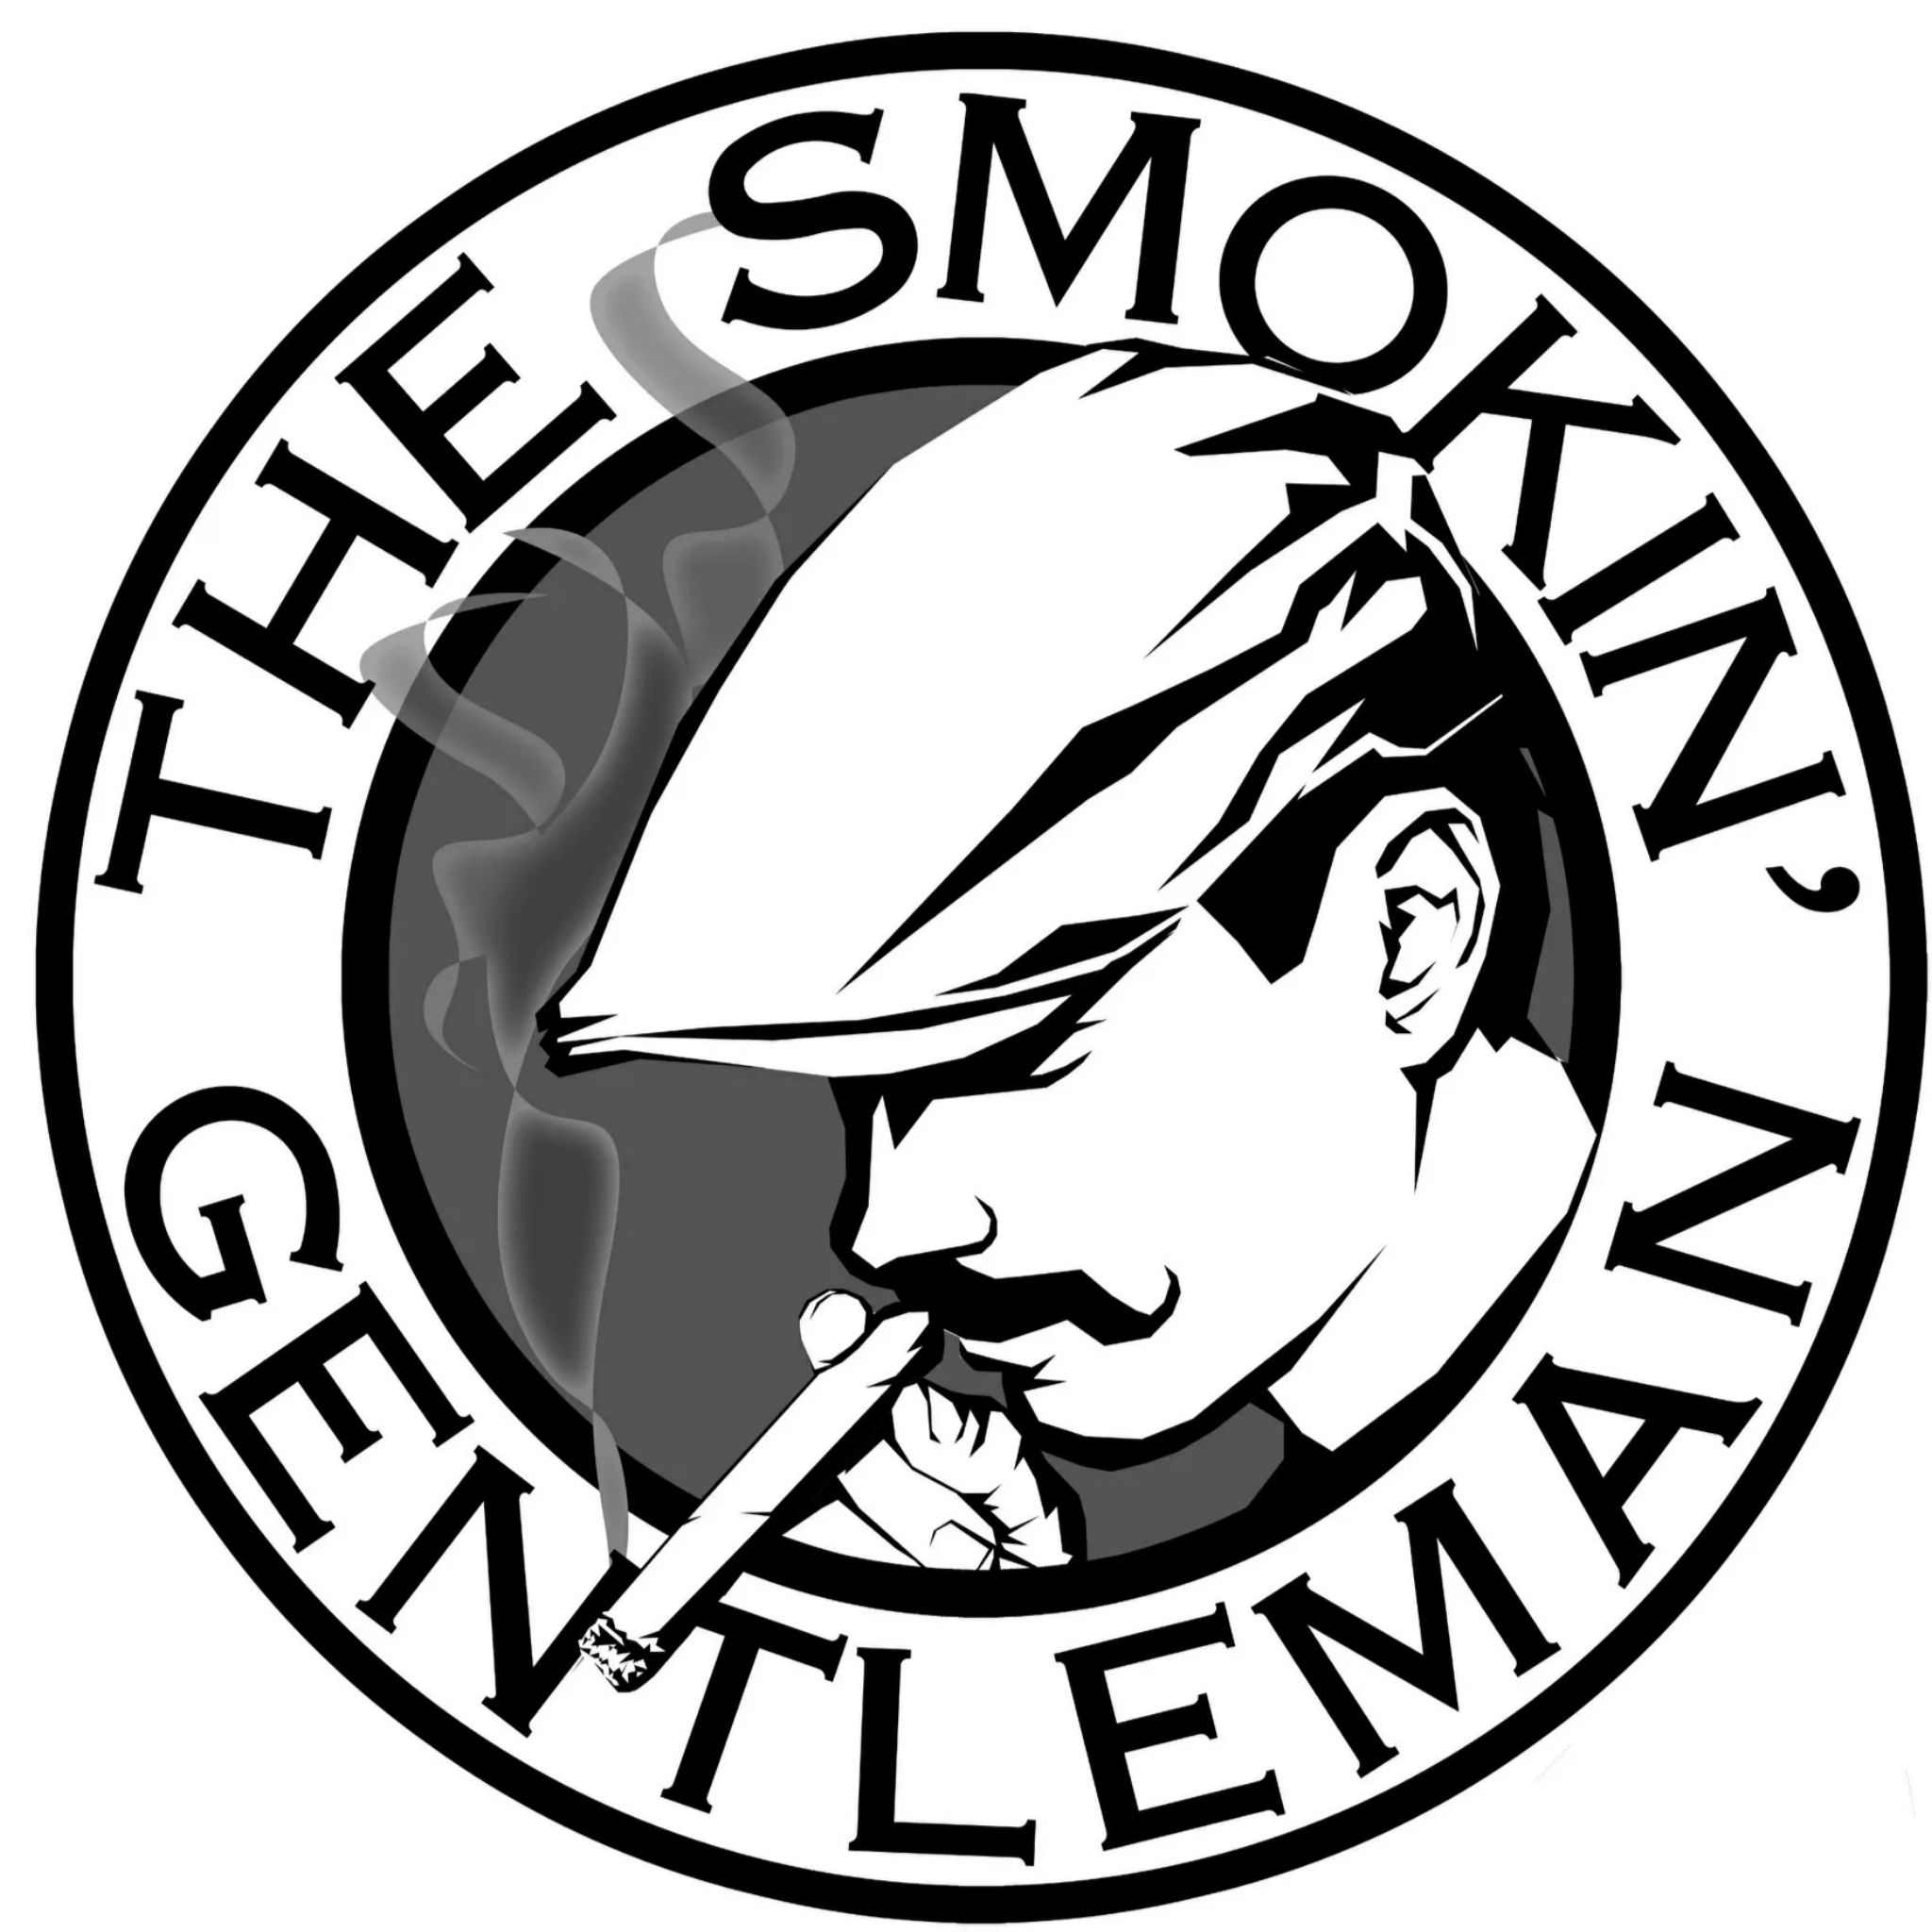 The Smokin' Gentleman